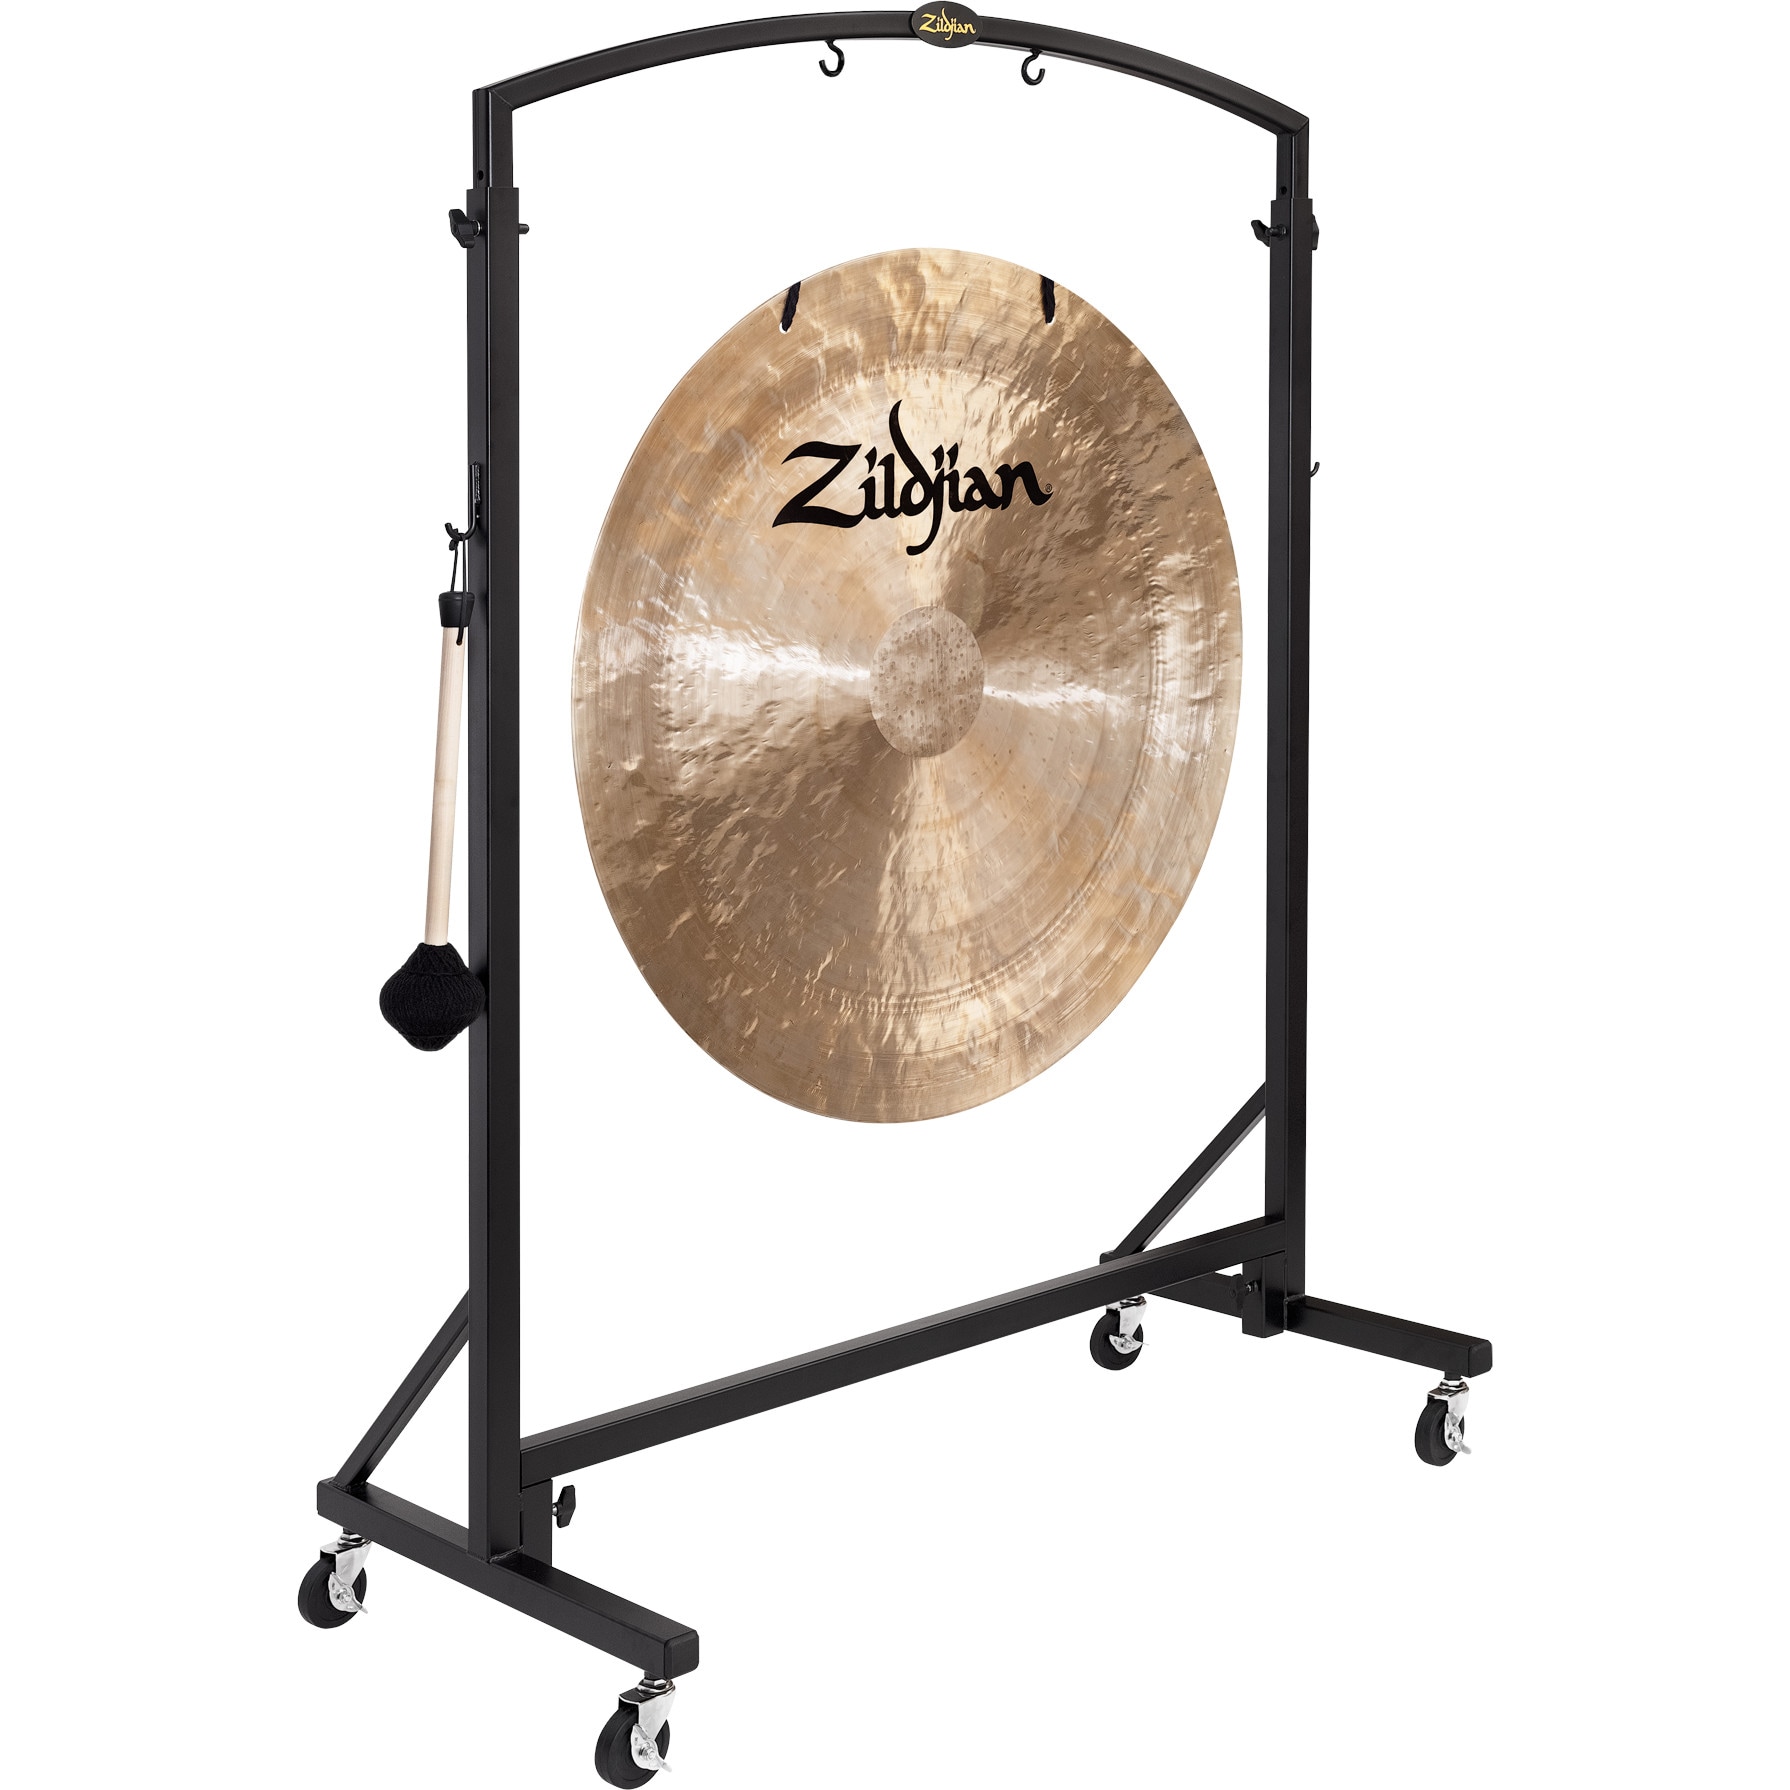 Zildjian Heavy Duty Gong Stand standaard voor gongs tot 40 inch